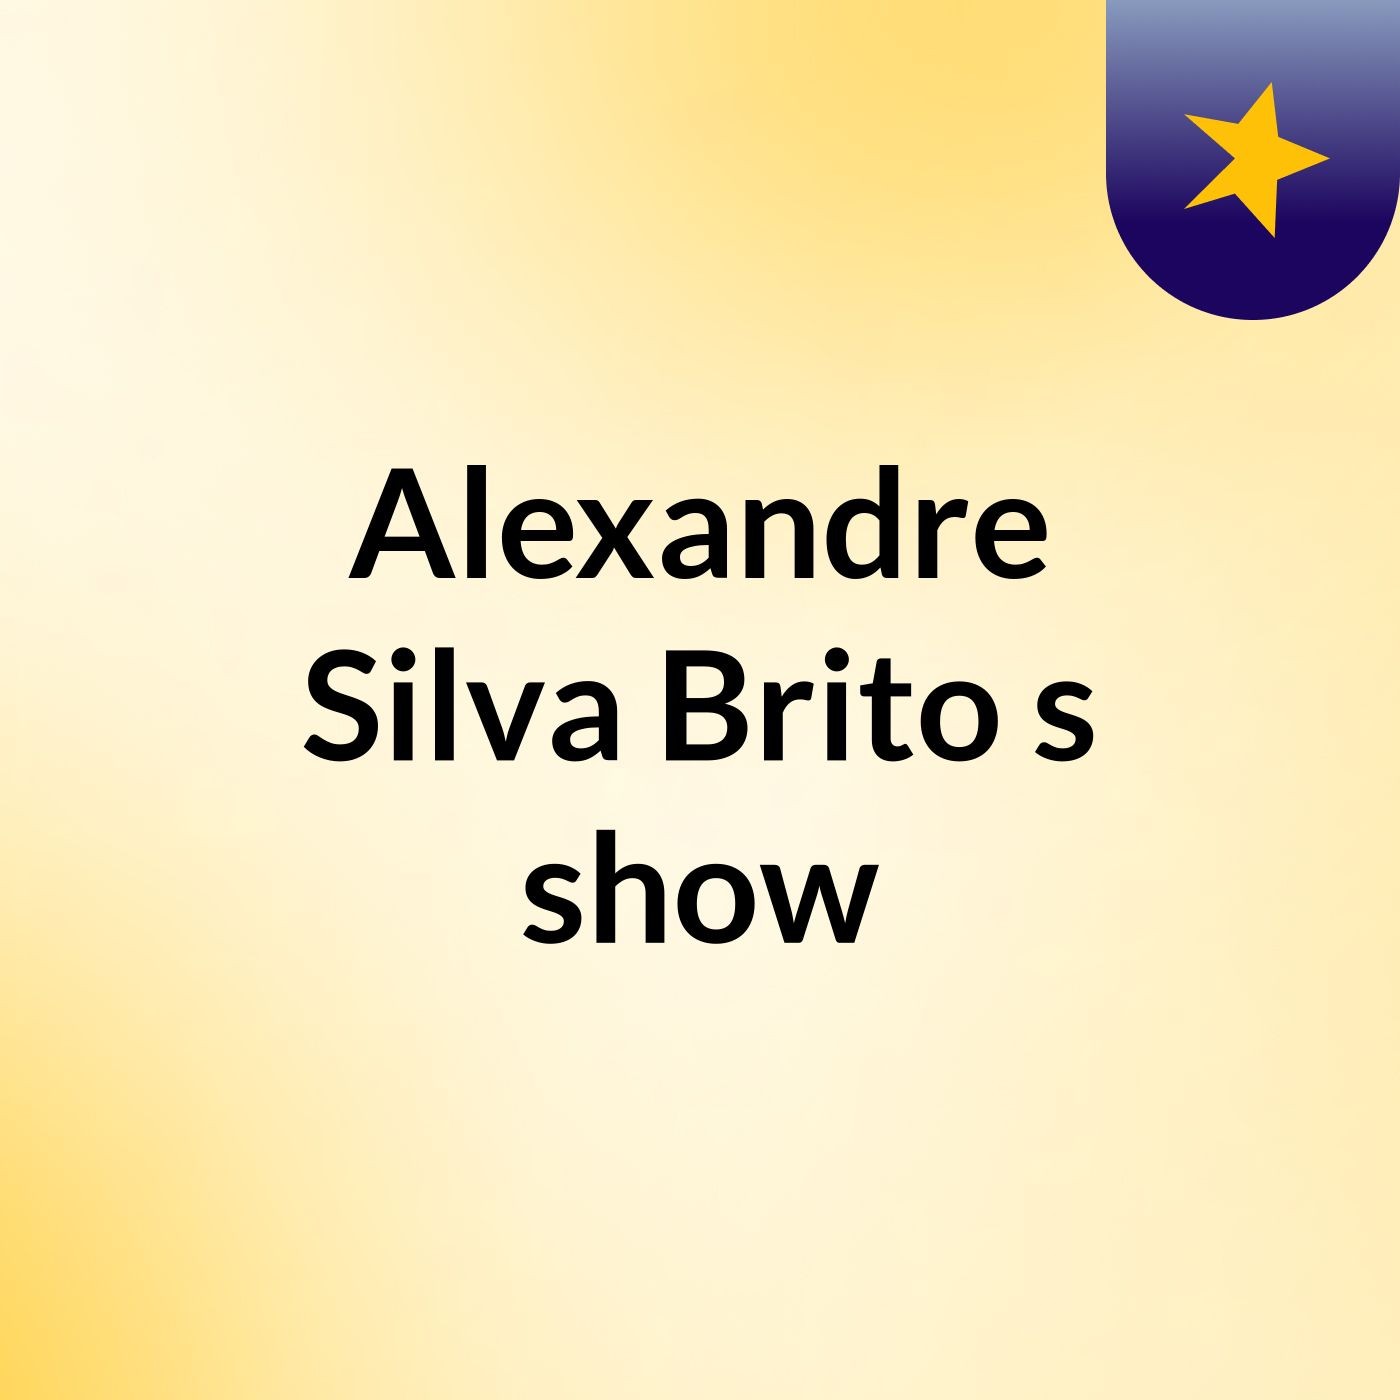 Alexandre Silva Brito's show